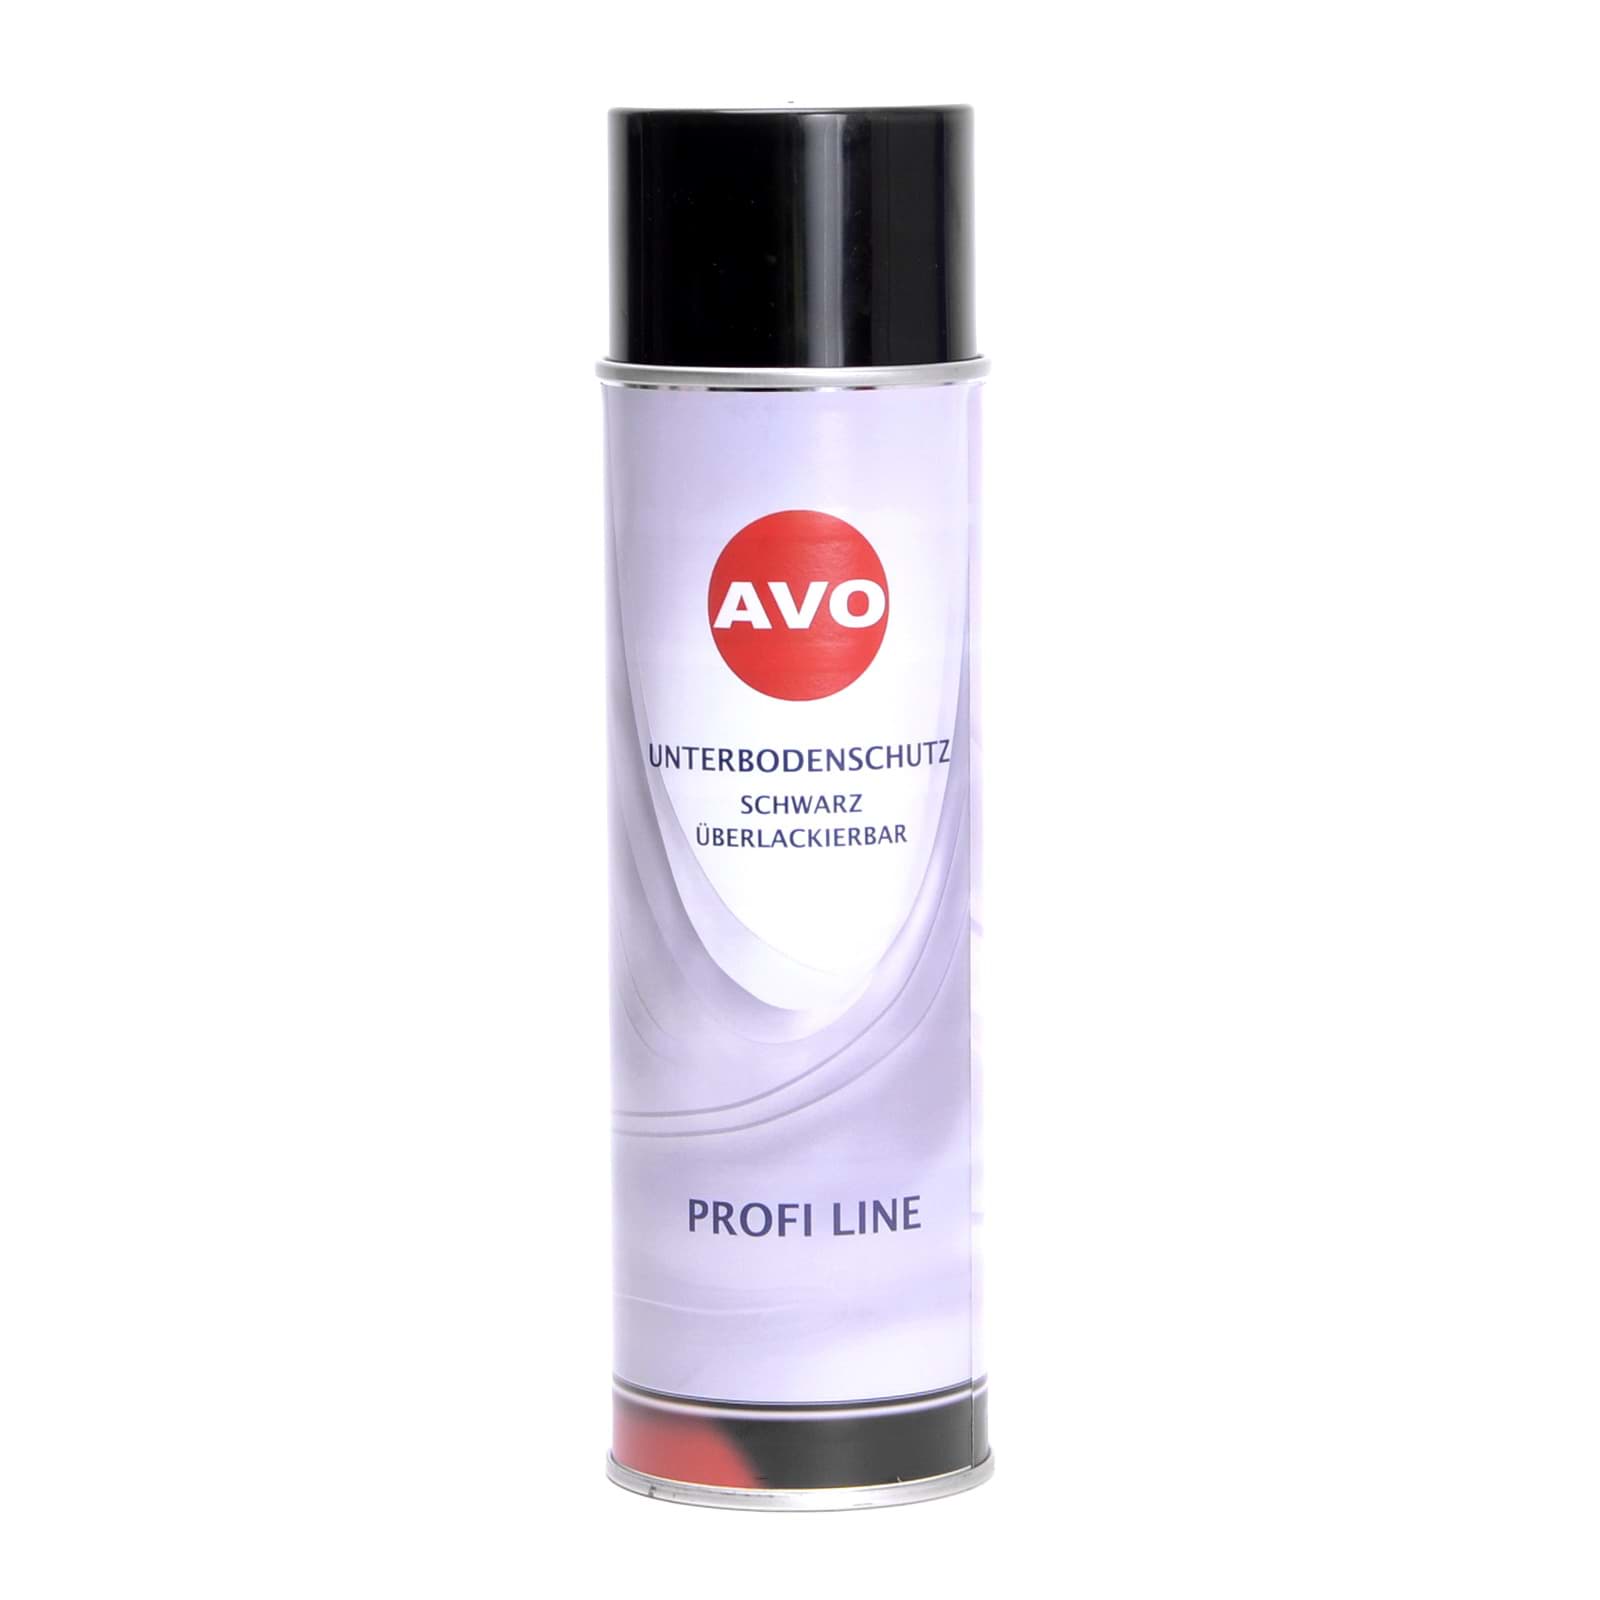 Picture of AVO Unterbodenschutz Spray überlackierbar schwarz 500ml